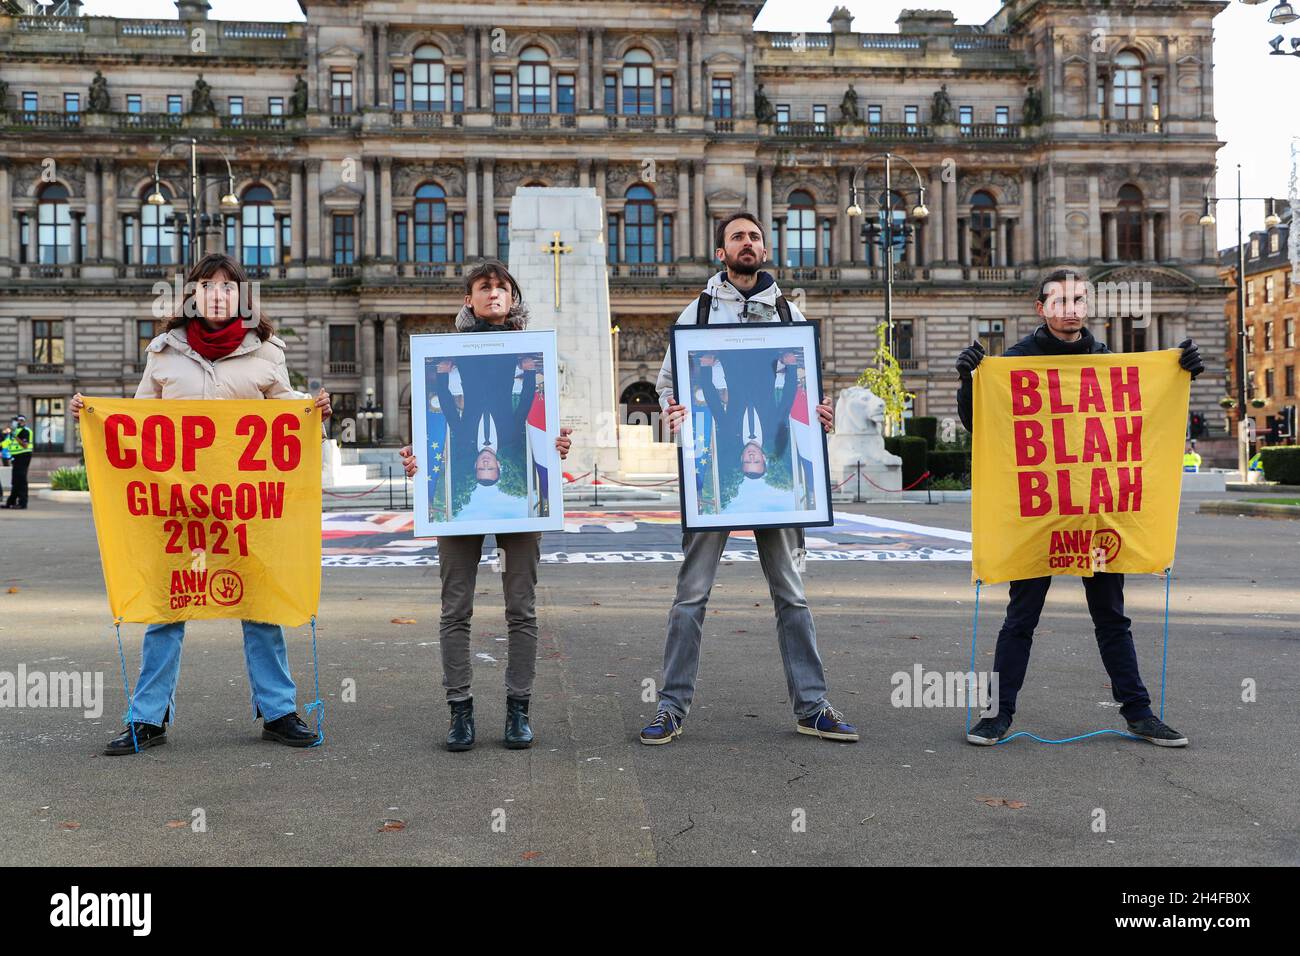 ANV 21, eine gewaltfreie französische Klimafolgengruppe, veranstaltete während der COP26-Klimakonferenz eine Demonstration auf dem George Square, Glasgow, mit der Behauptung, der französische Präsident EMMANUEL MACRON sei wegen Untätigkeit im Hinblick auf den Klimawandel schuldig. Kredit: Findlay/Alamy Live Nachrichten Stockfoto